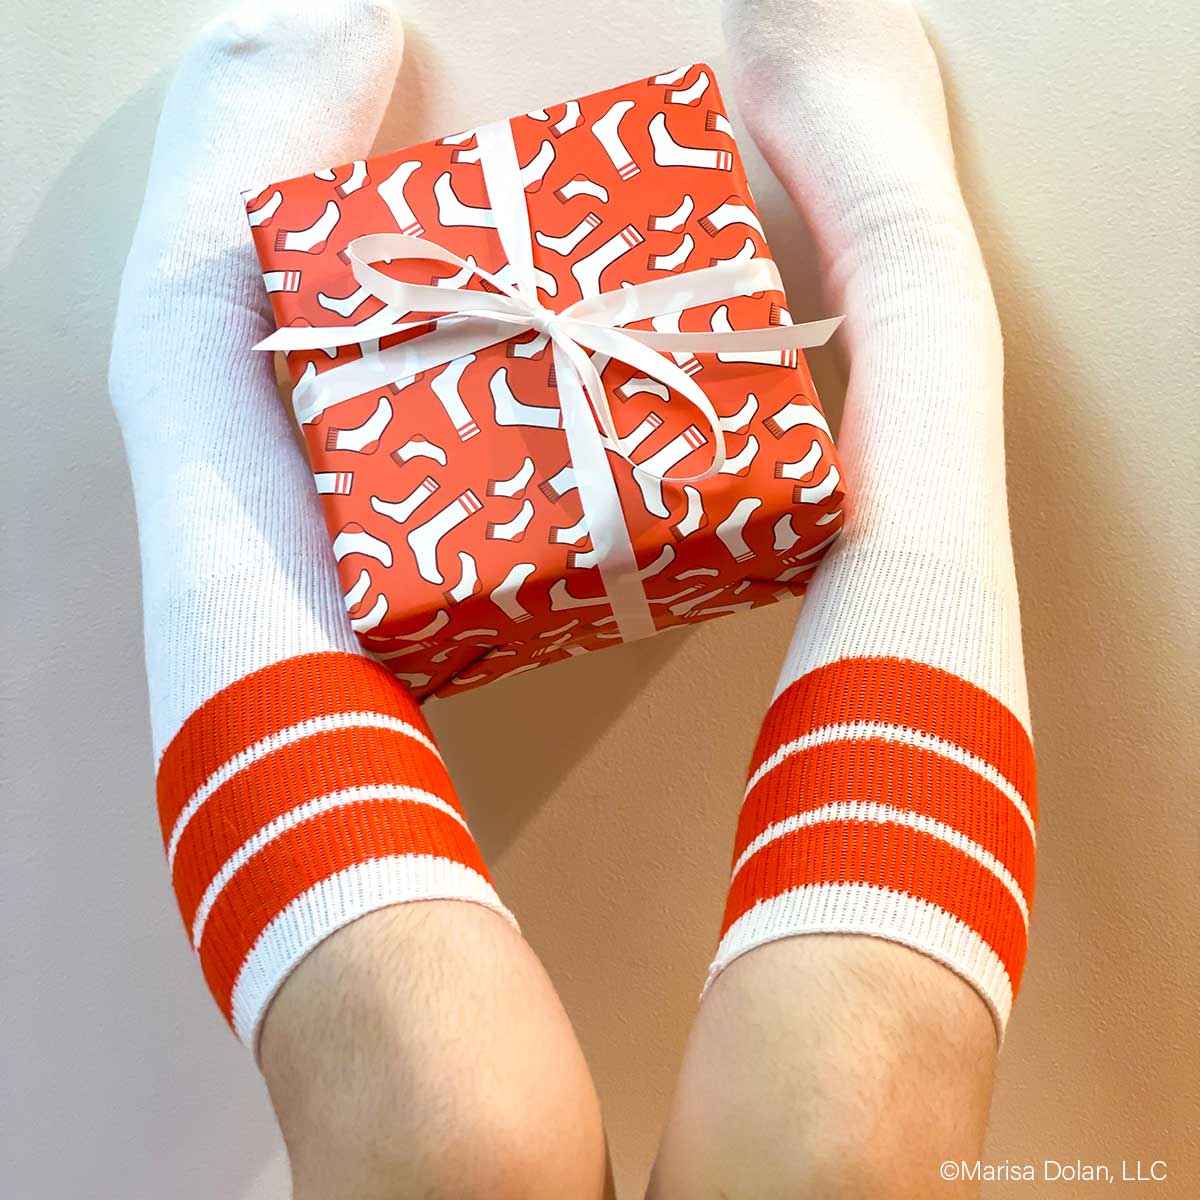 Fun socks gift wrap pattern design by designer Marisa Dolan